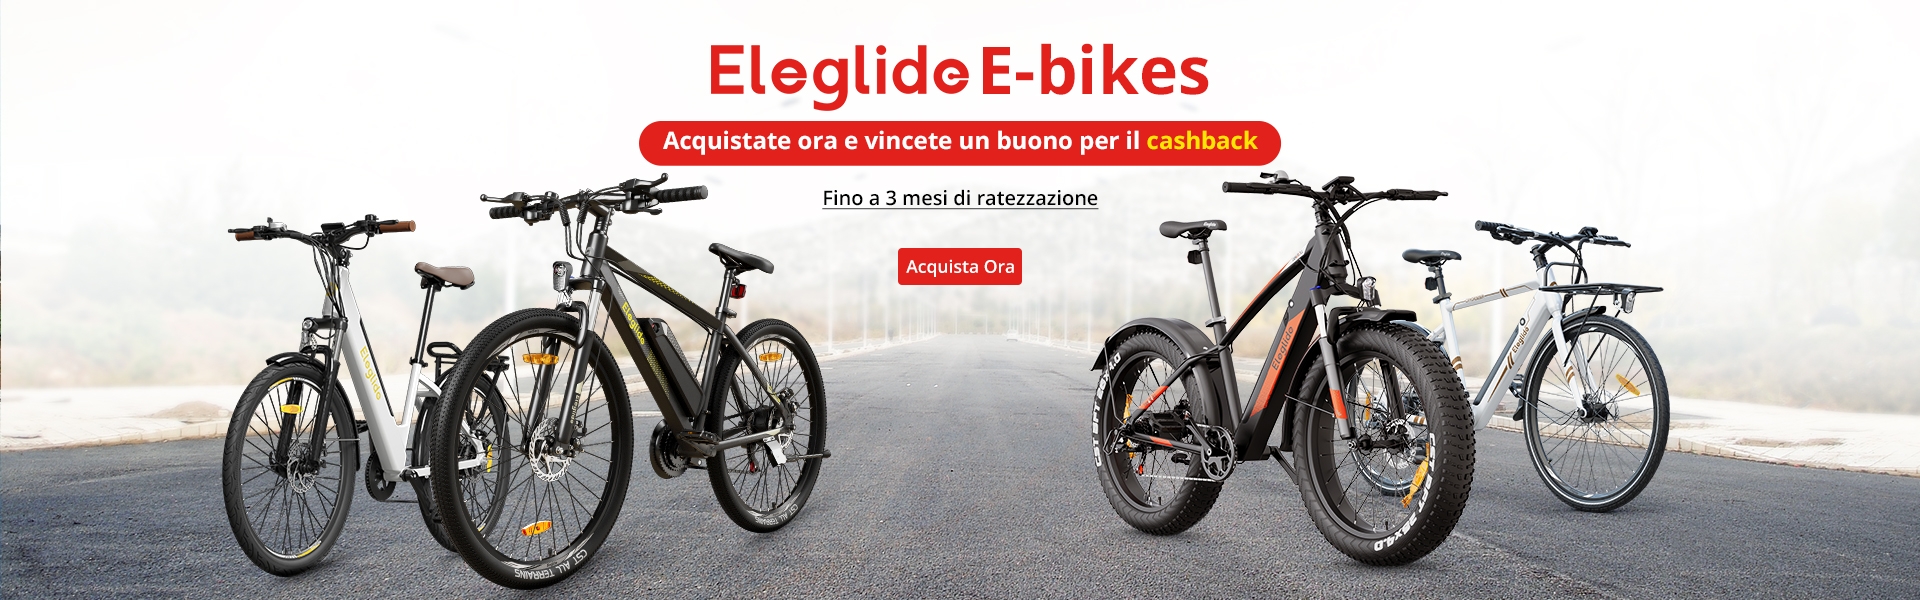 Ottieni 50€ di sconto su tutte le biciclette elettriche – Promozione Geekmall.it